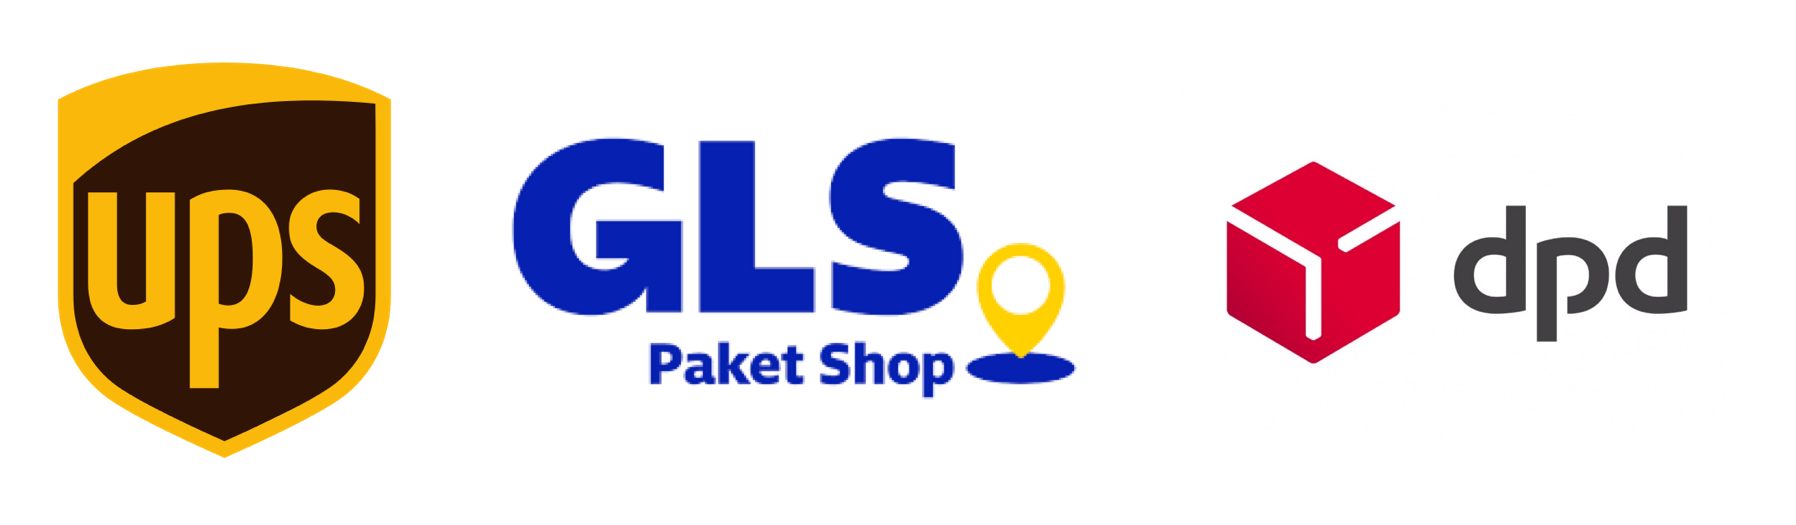 Paketshop UPS DPD GLS